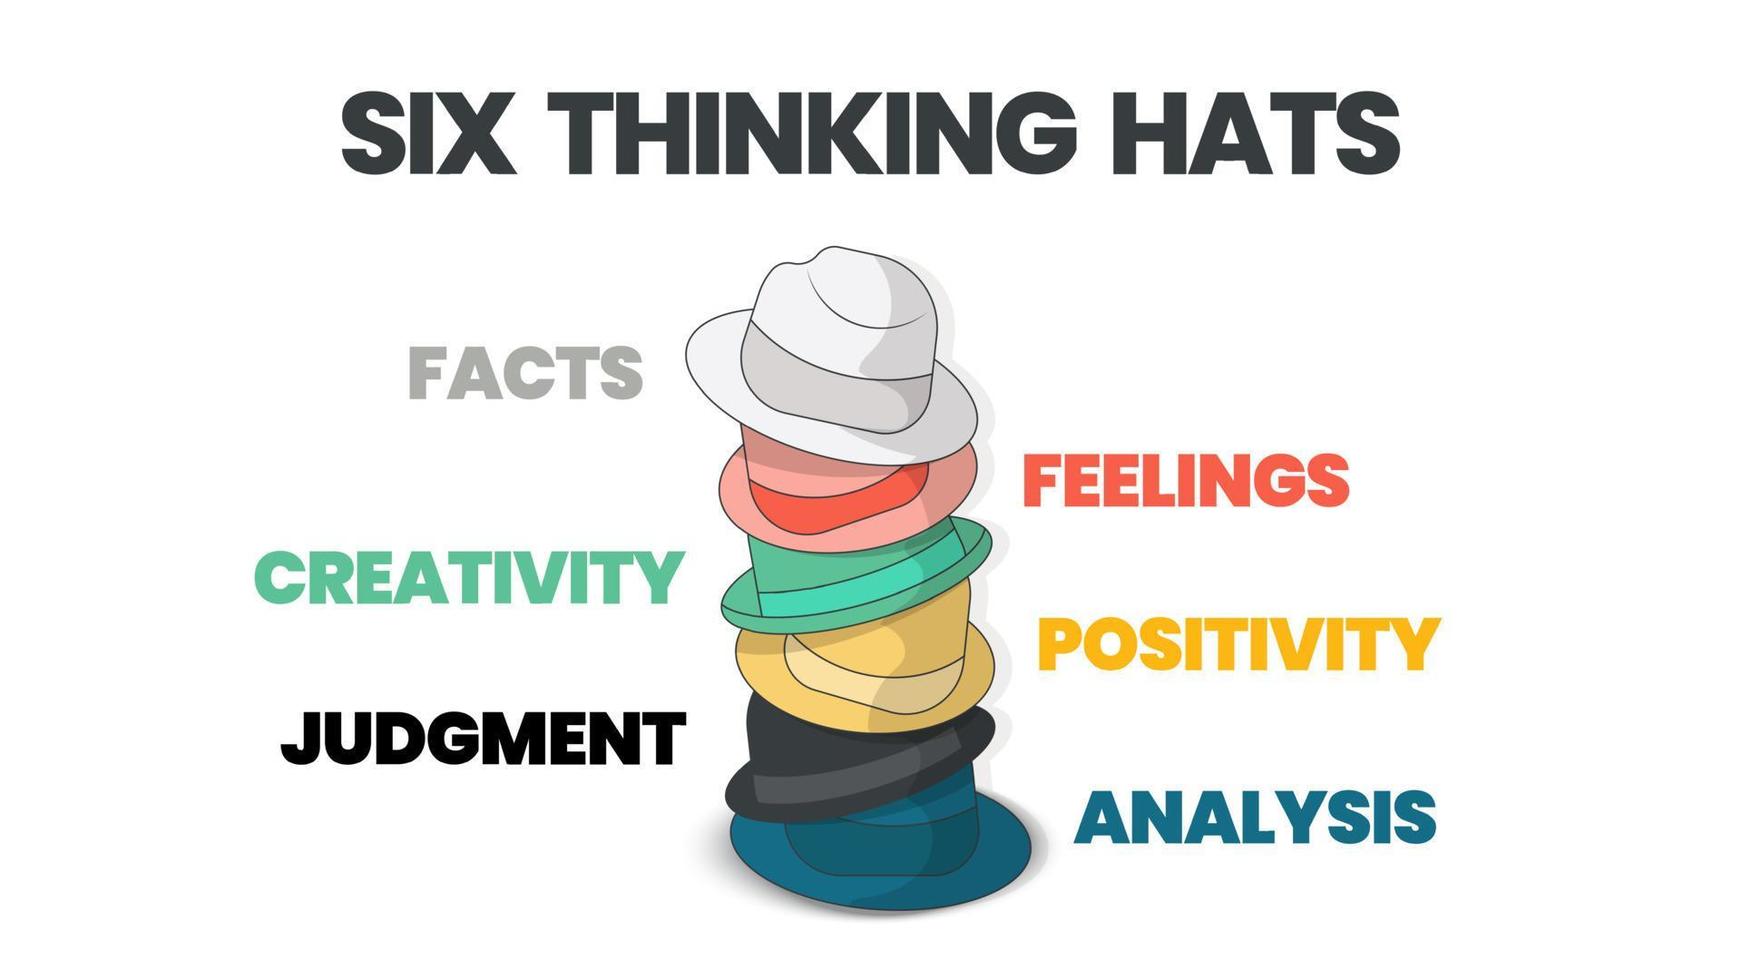 El diagrama de seis conceptos de sombreros para pensar se ilustra en el vector de presentación infográfica. la imagen tiene 6 elementos como sombreros de colores. cada uno representa hechos, sentimientos, creatividad, juicio, análisis, etc.